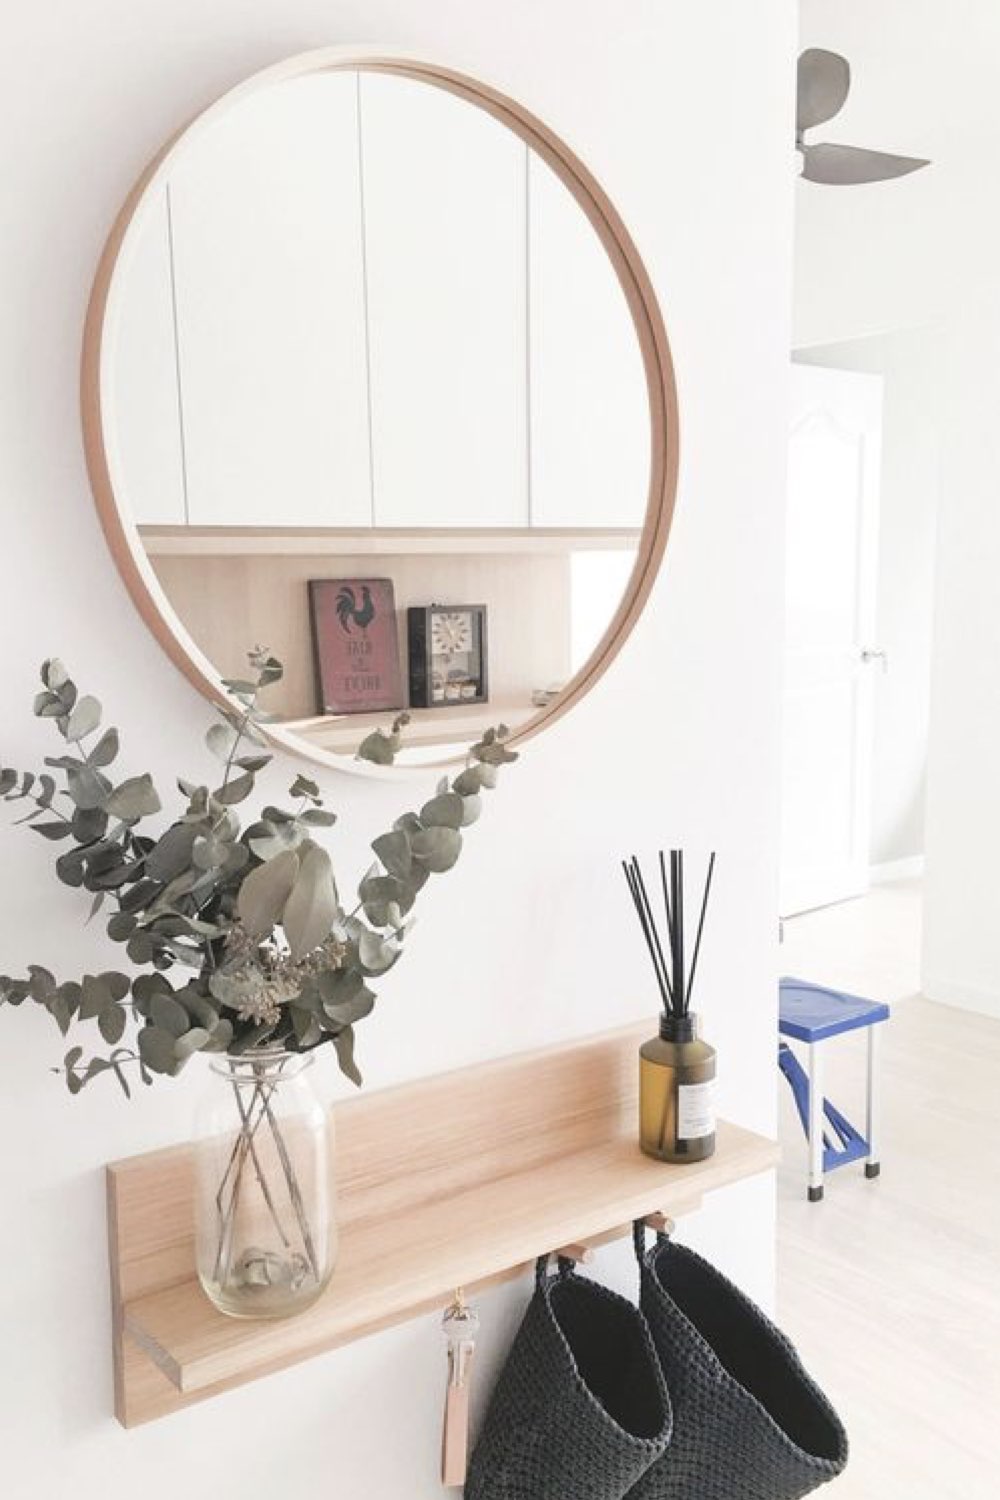 idee deco entree plus accueillante accessoire décoratif miroir rond étagère bois vase fleurs séchées style moderne et lumineux